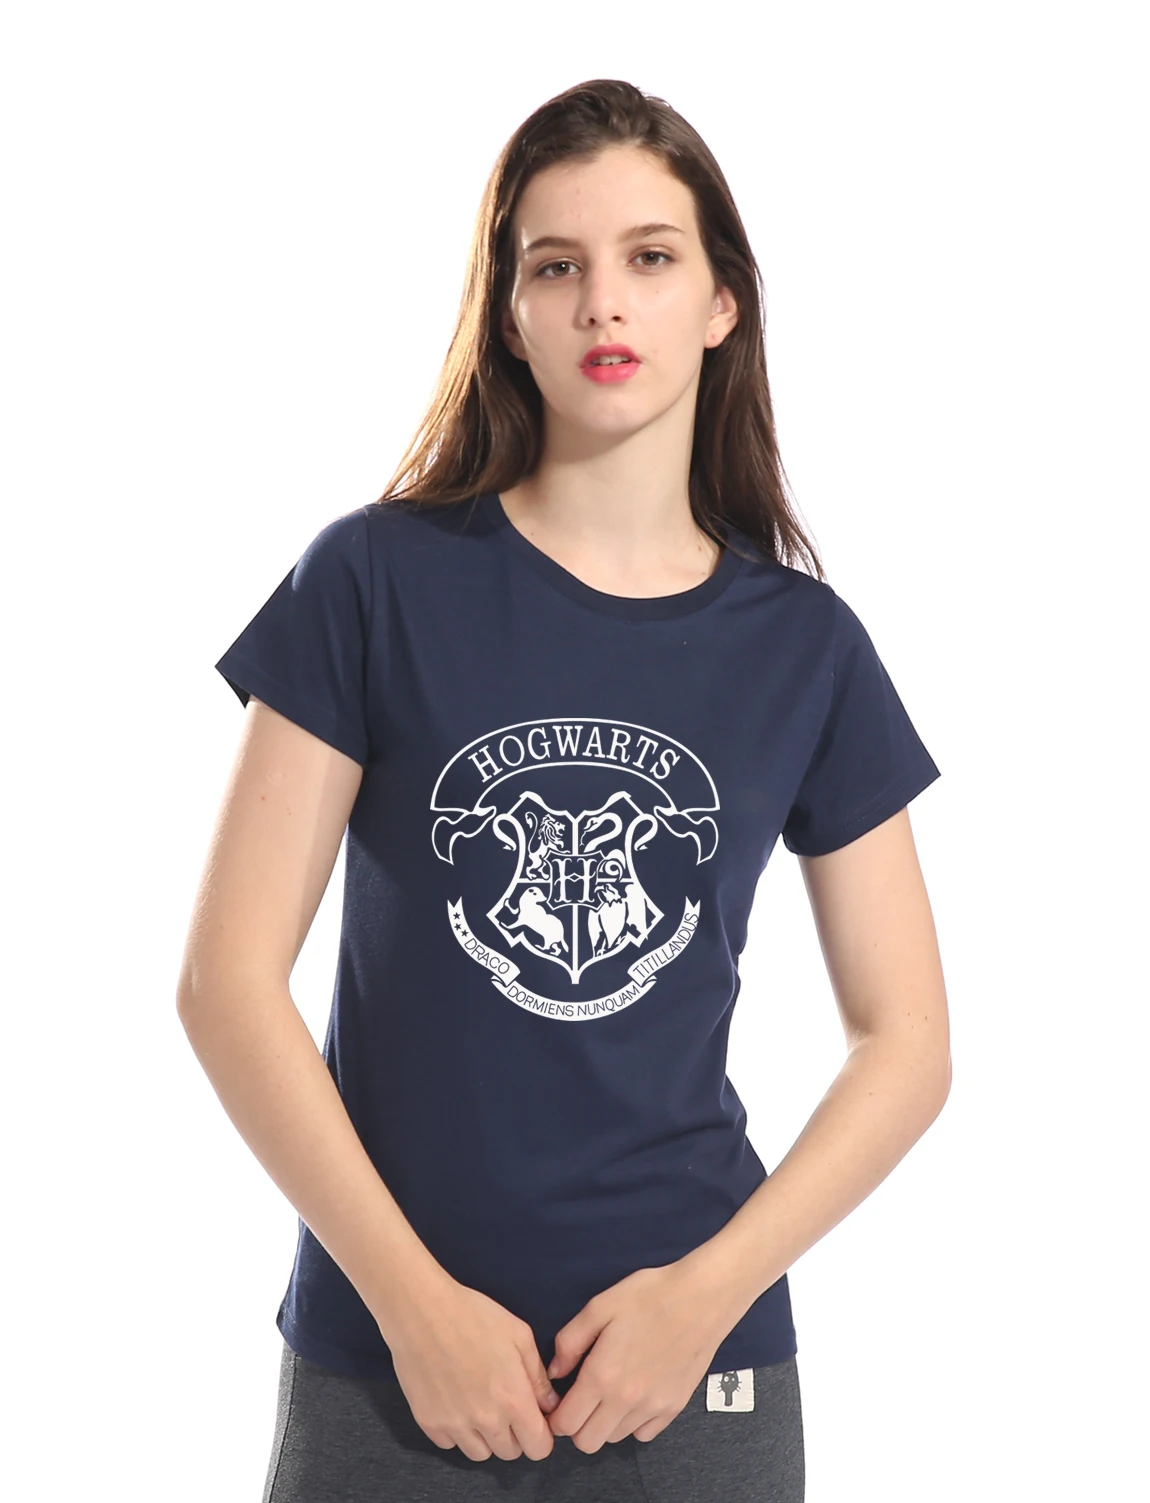 3D галактика Хогвартс женская футболка Deathly Hallows лето горячая распродажа новые женские топы тройники хлопок высокое качество футболка женская s-xl